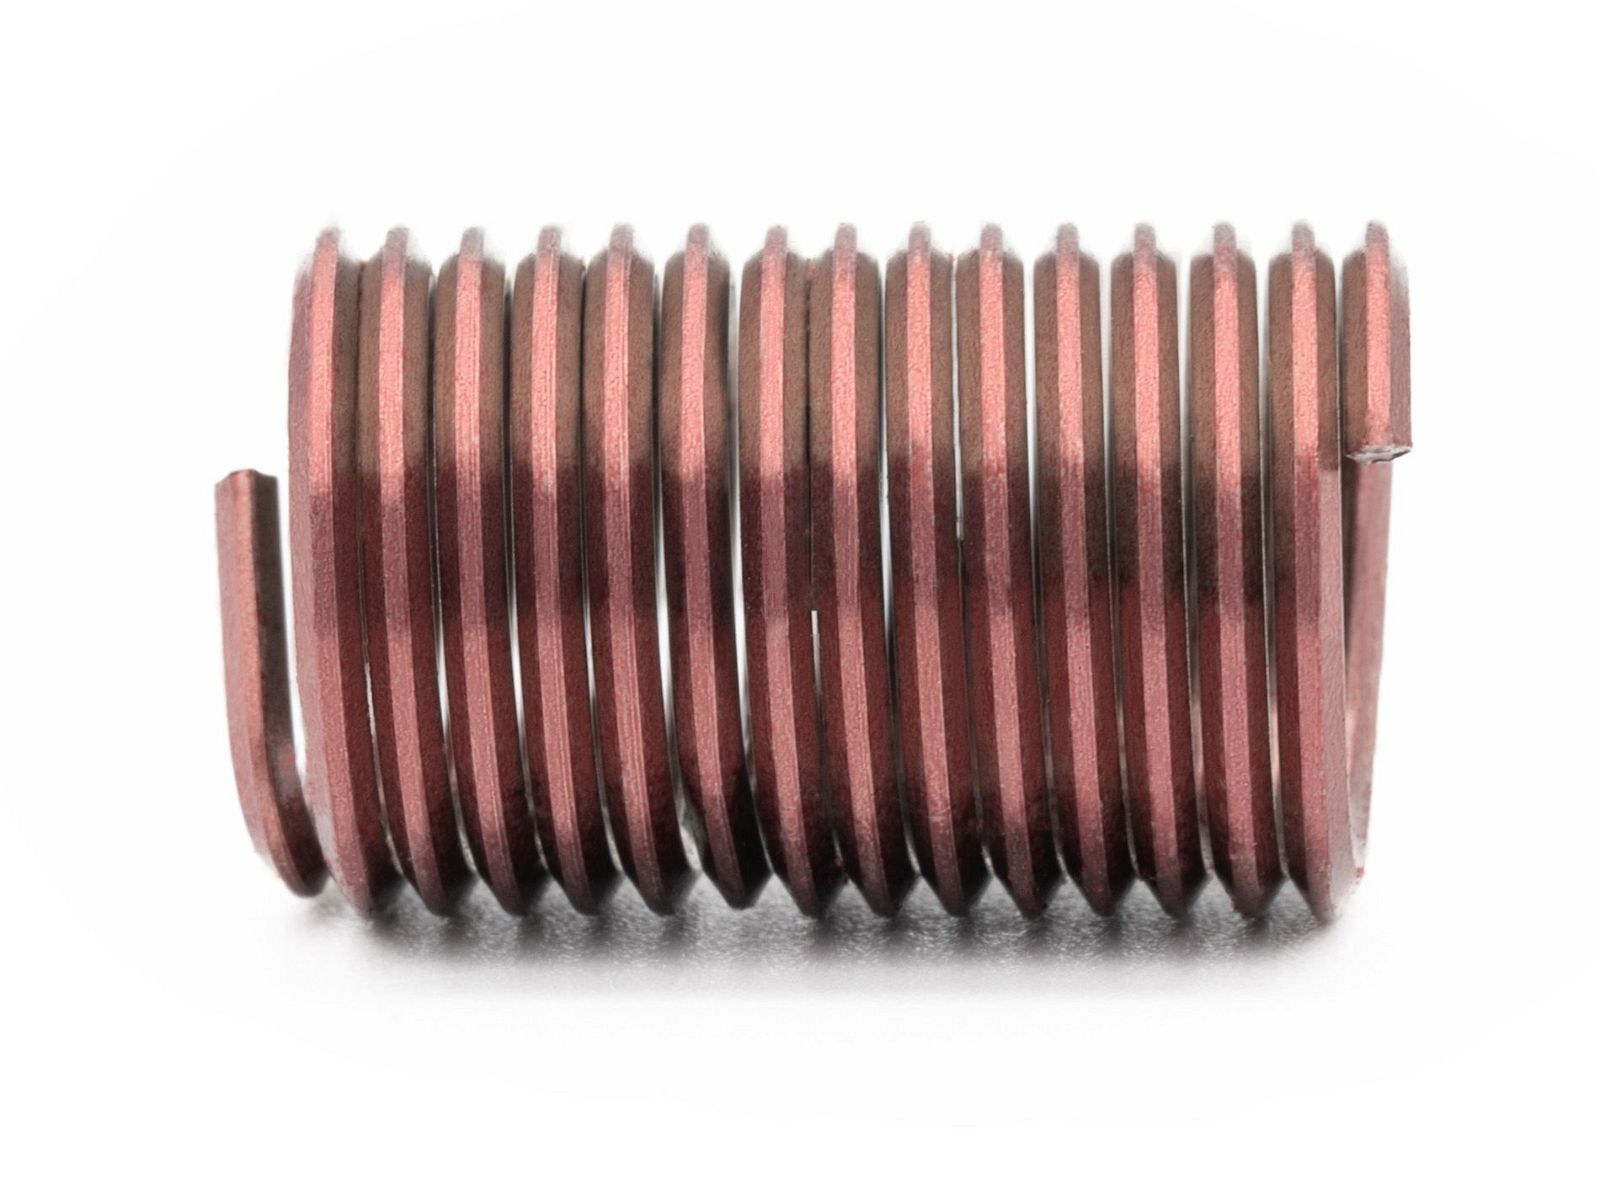 BaerCoil Wire Thread Inserts UNC No. 8 x 32 - 2.5 D (10.41 mm) - screw grip (screw locking) - 100 pcs.